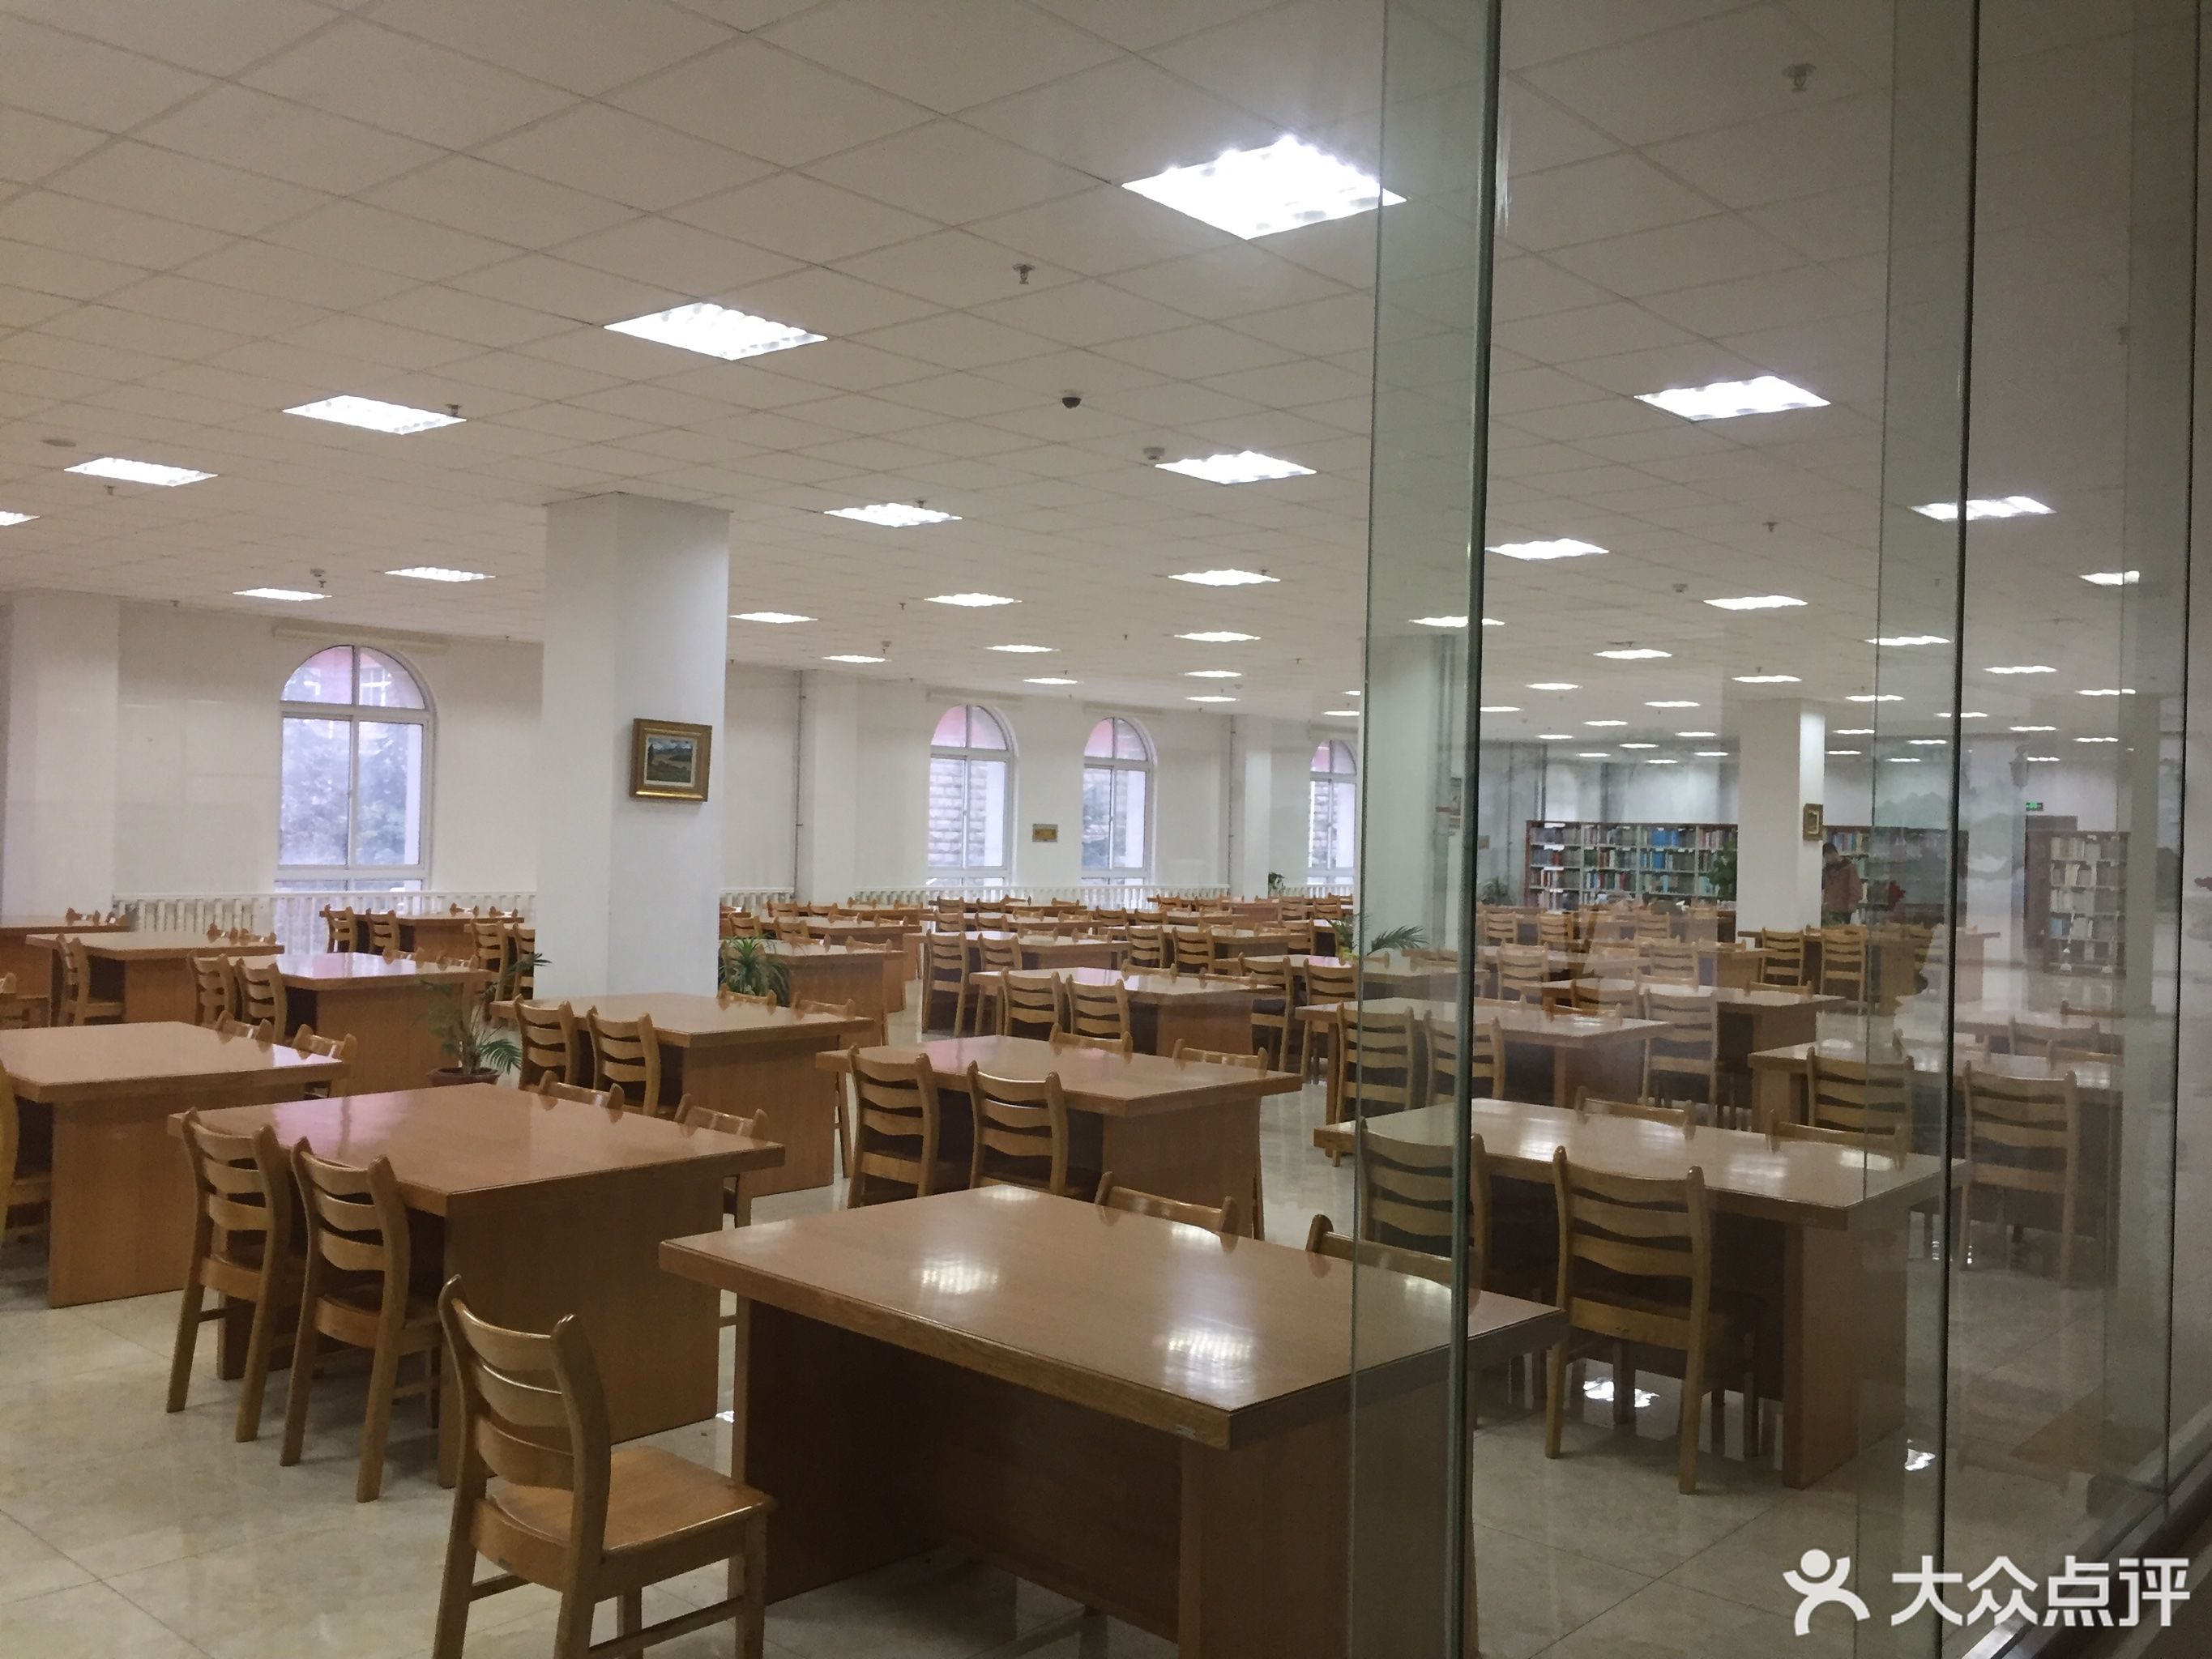        青岛滨海学院-中央图书馆